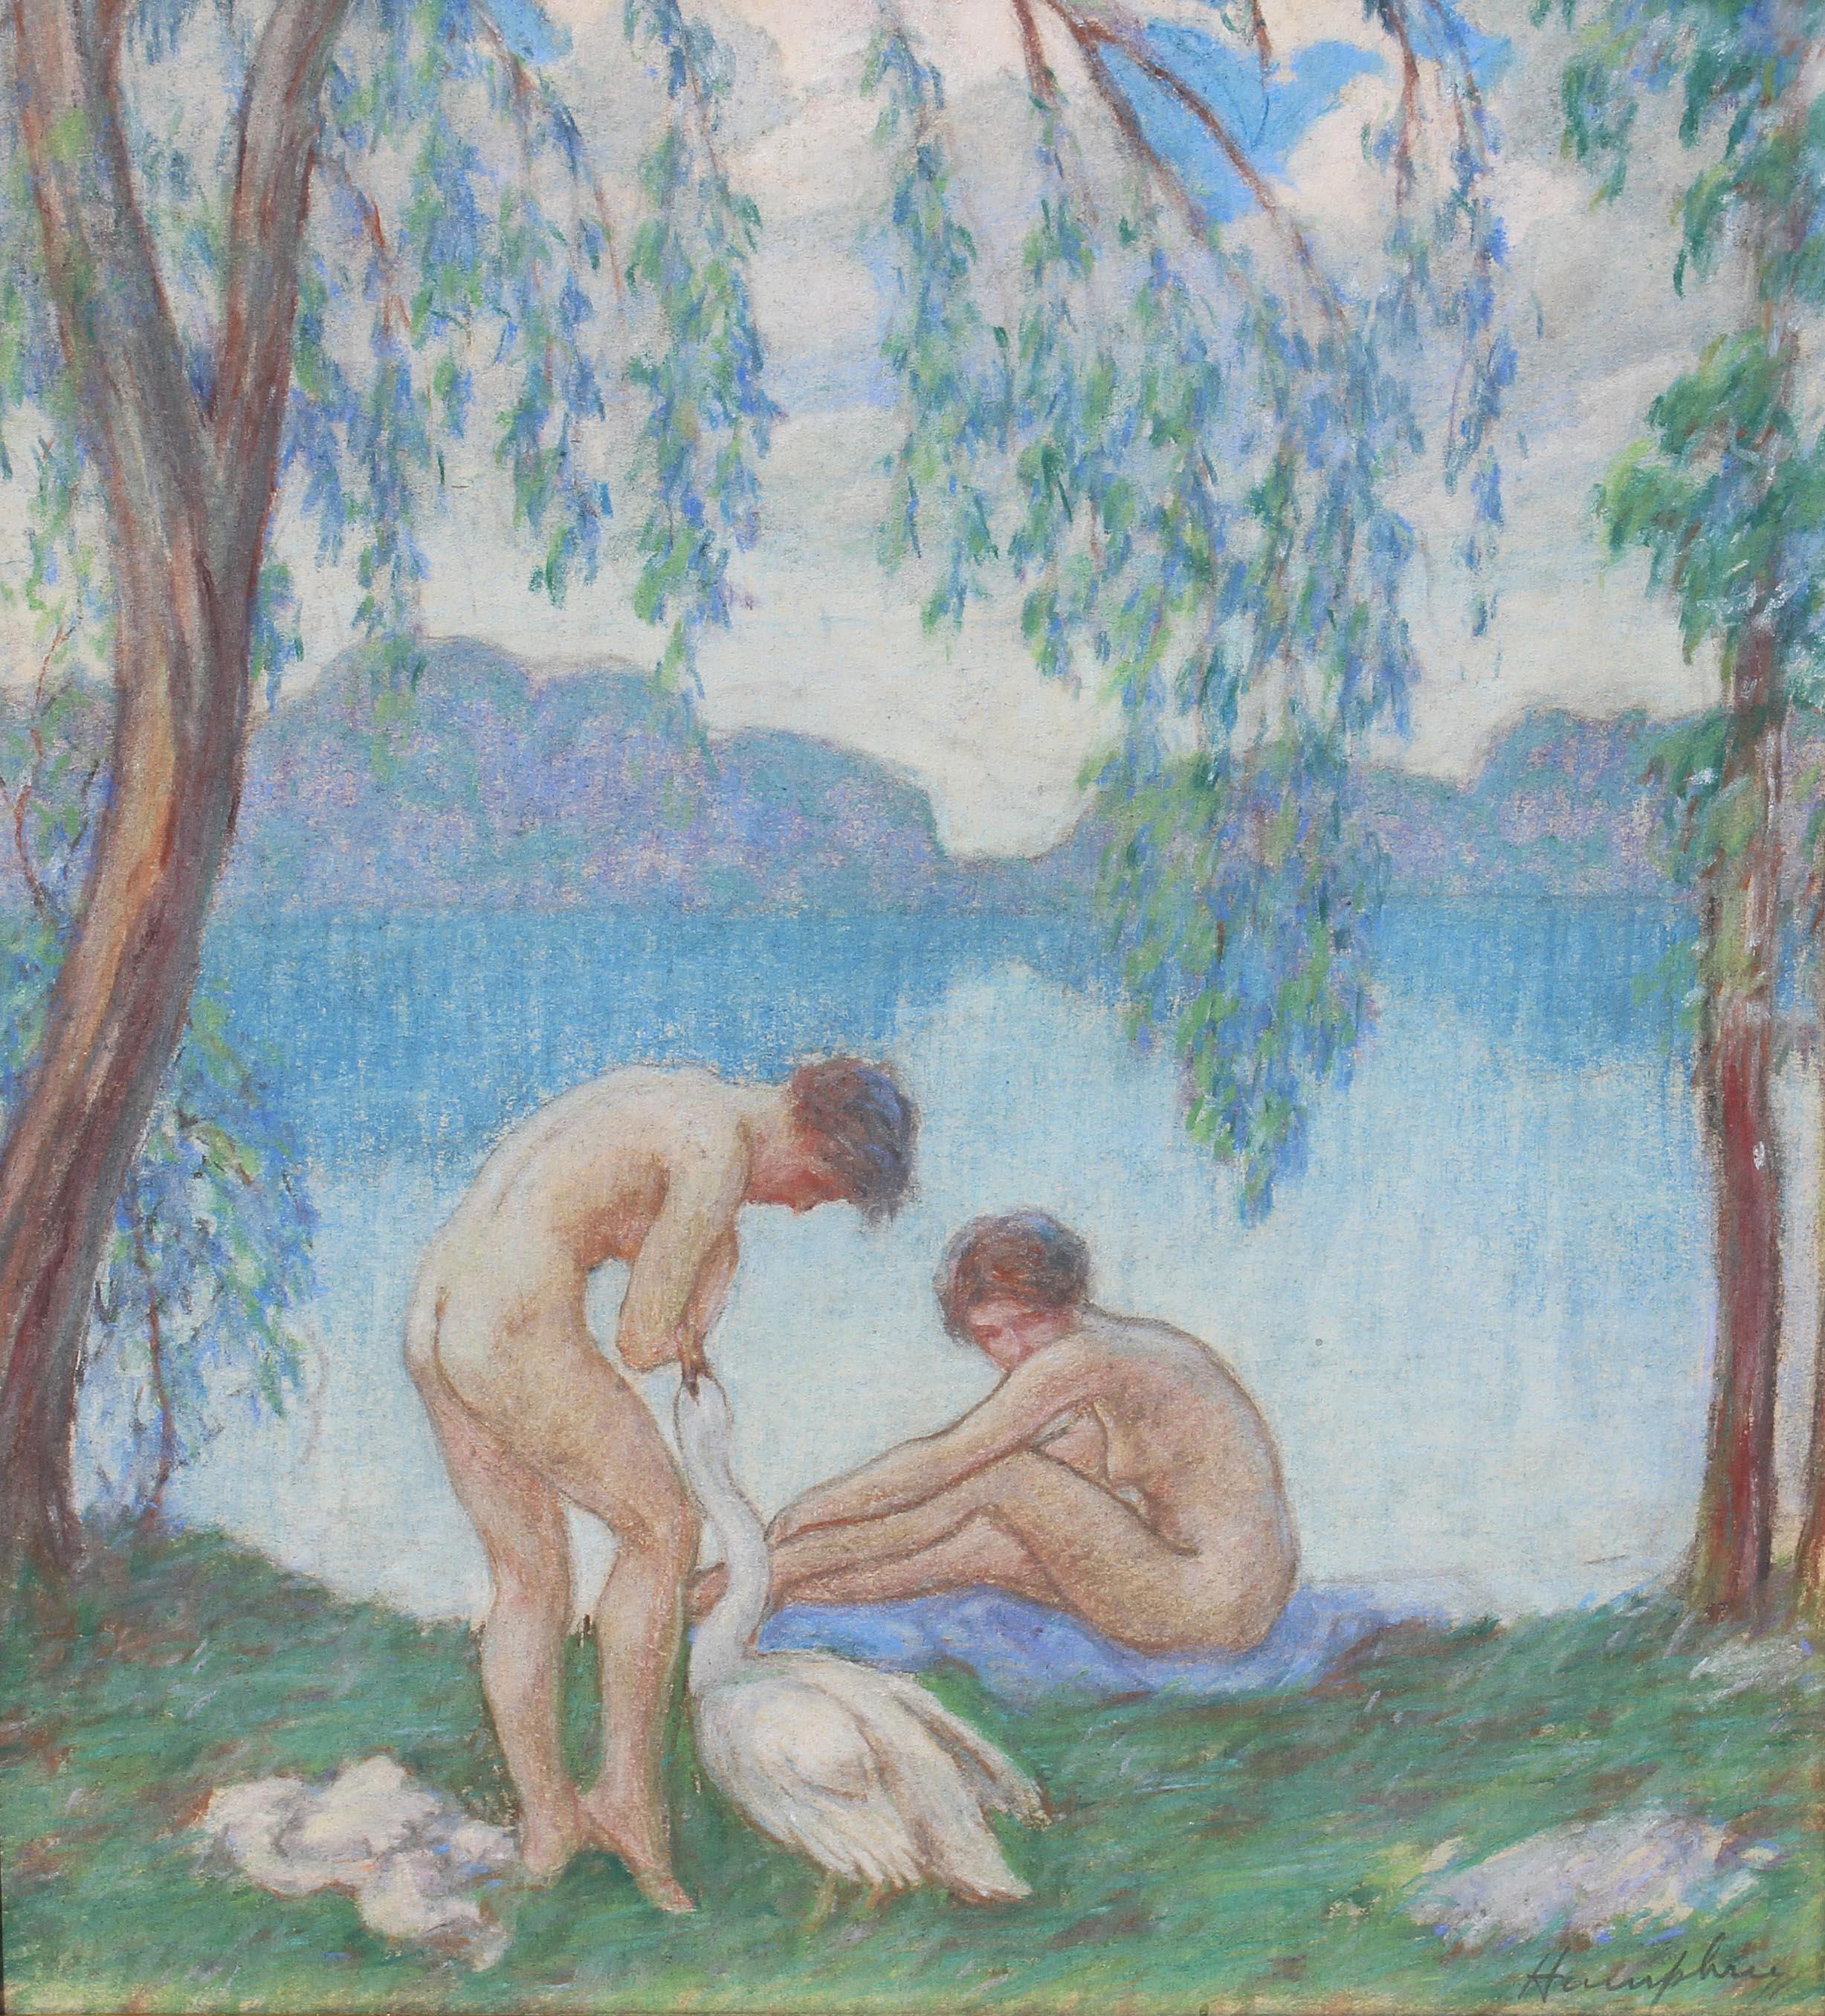  Peinture impressionniste - Baigneurs nus par David Humphrey